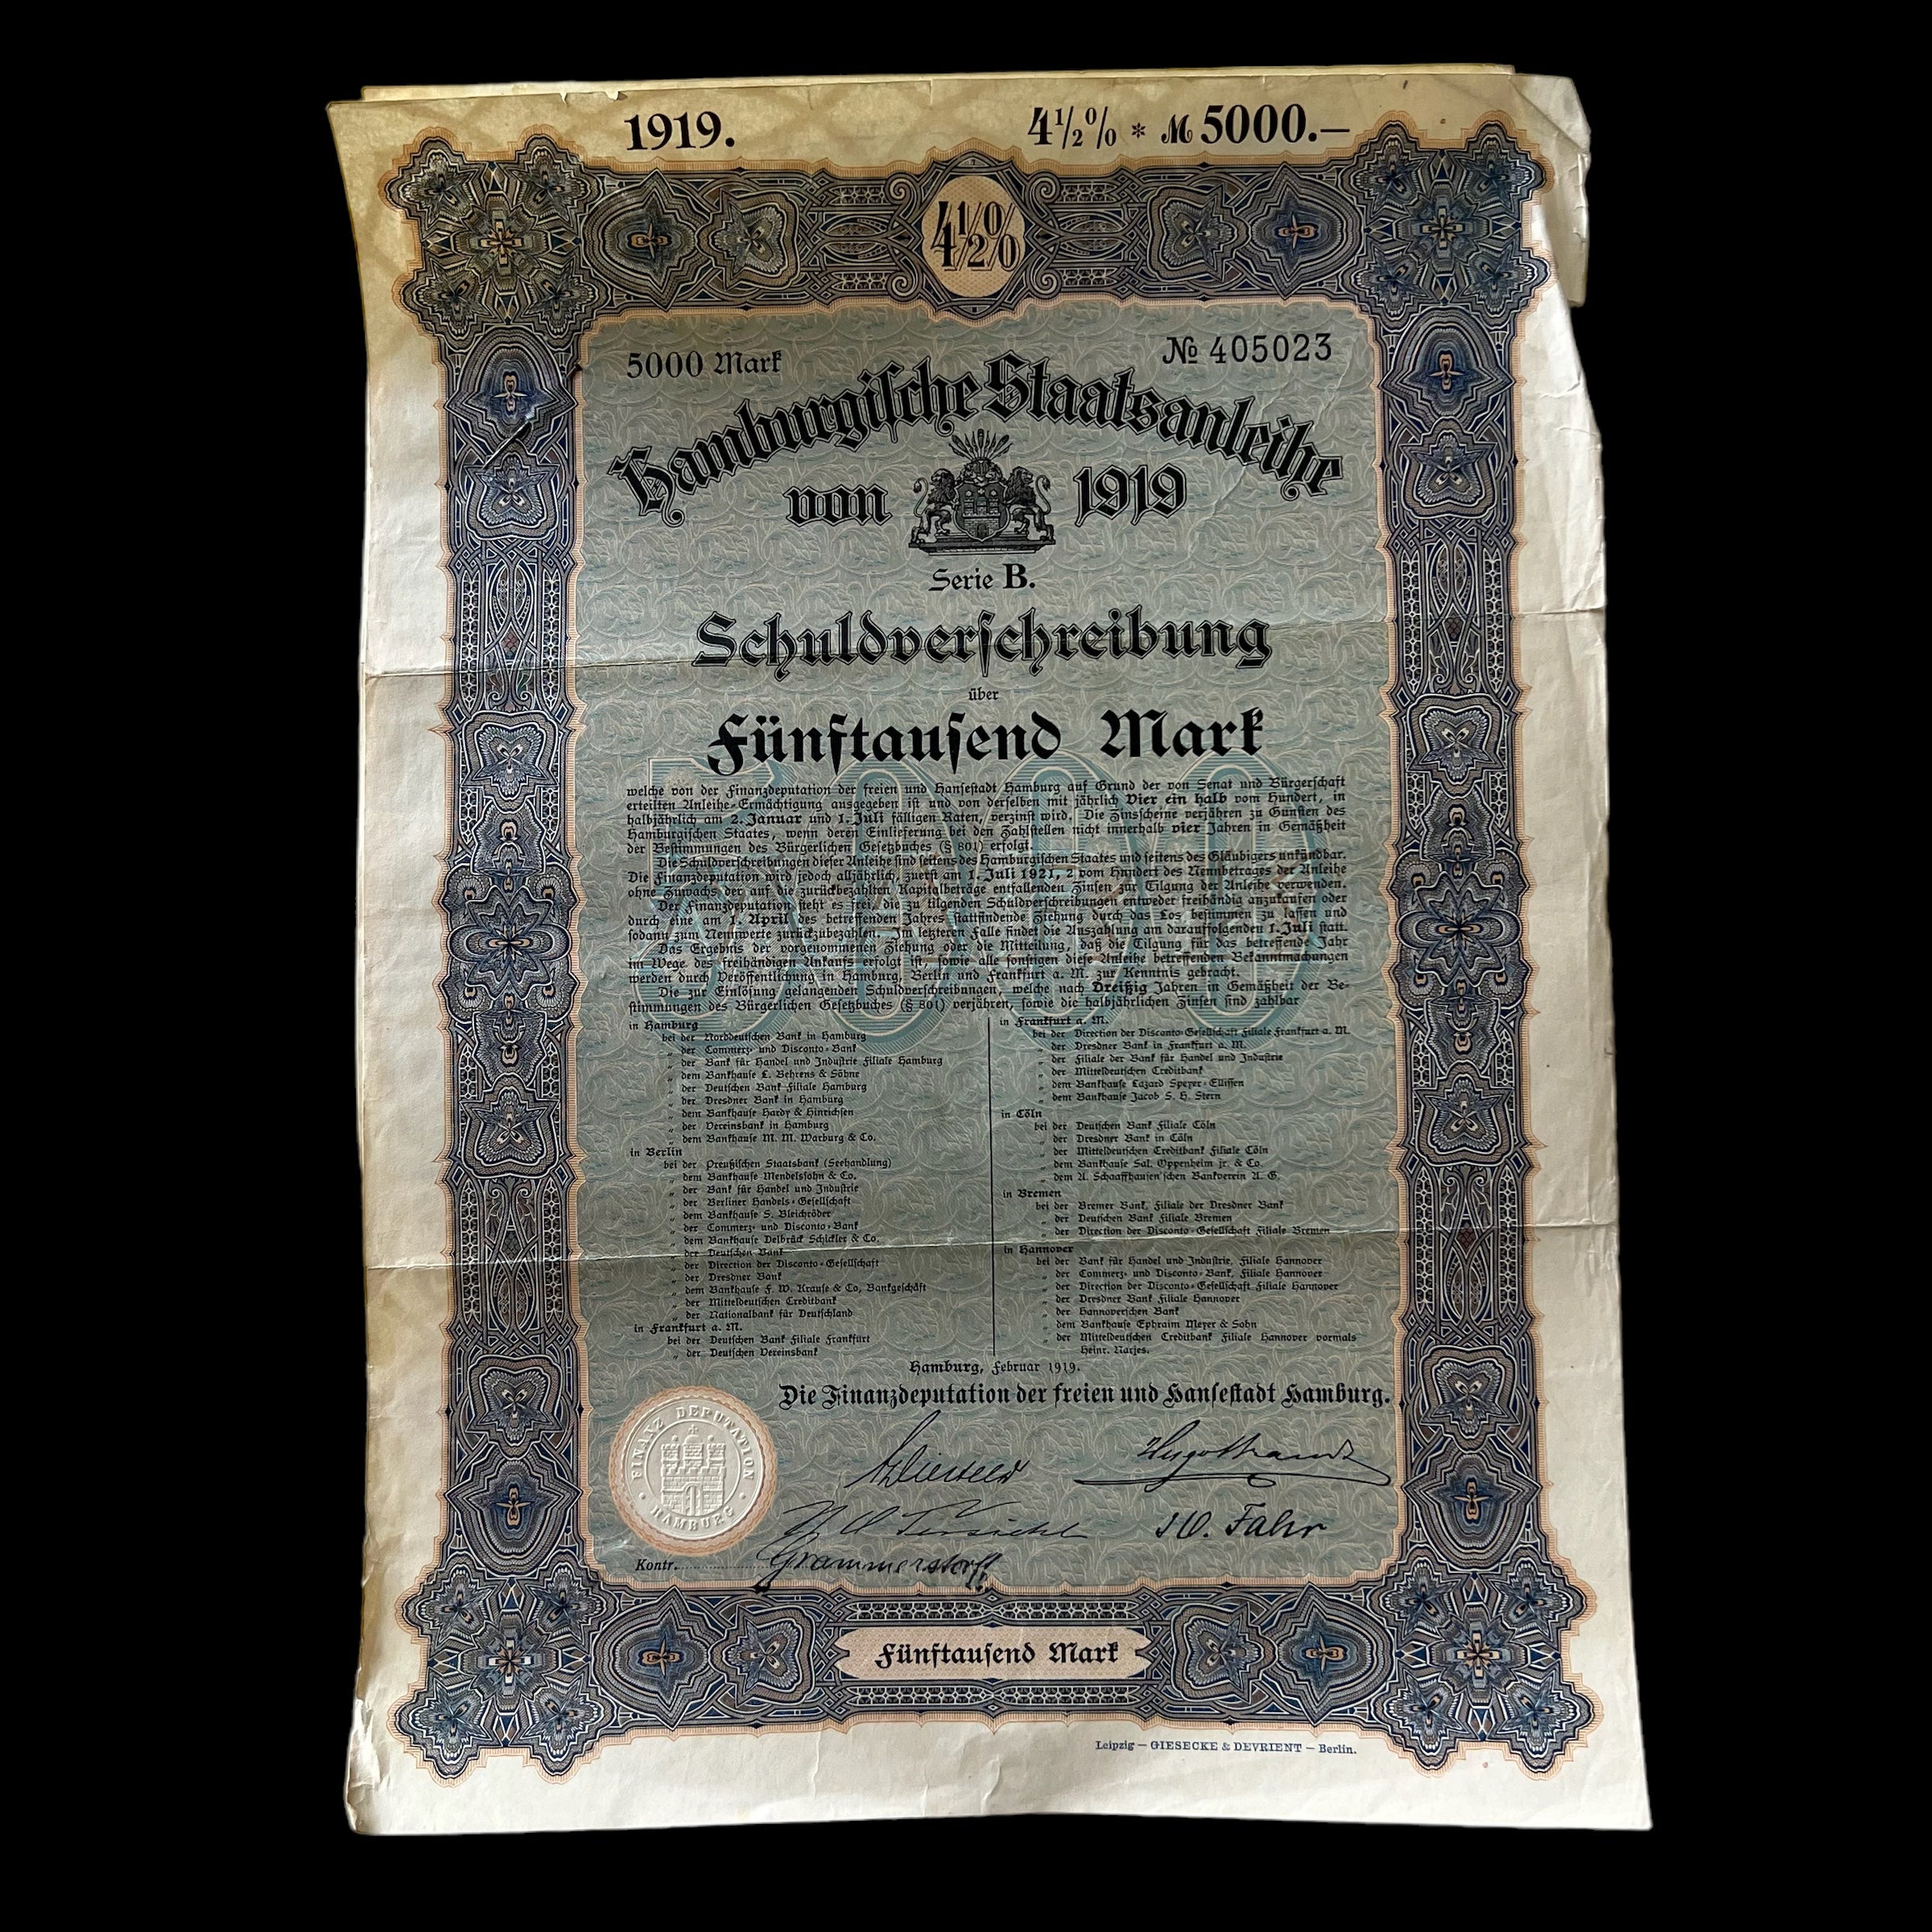 Bono del Estado de Hamburgo de 1919 Bono de 5.000 marcos